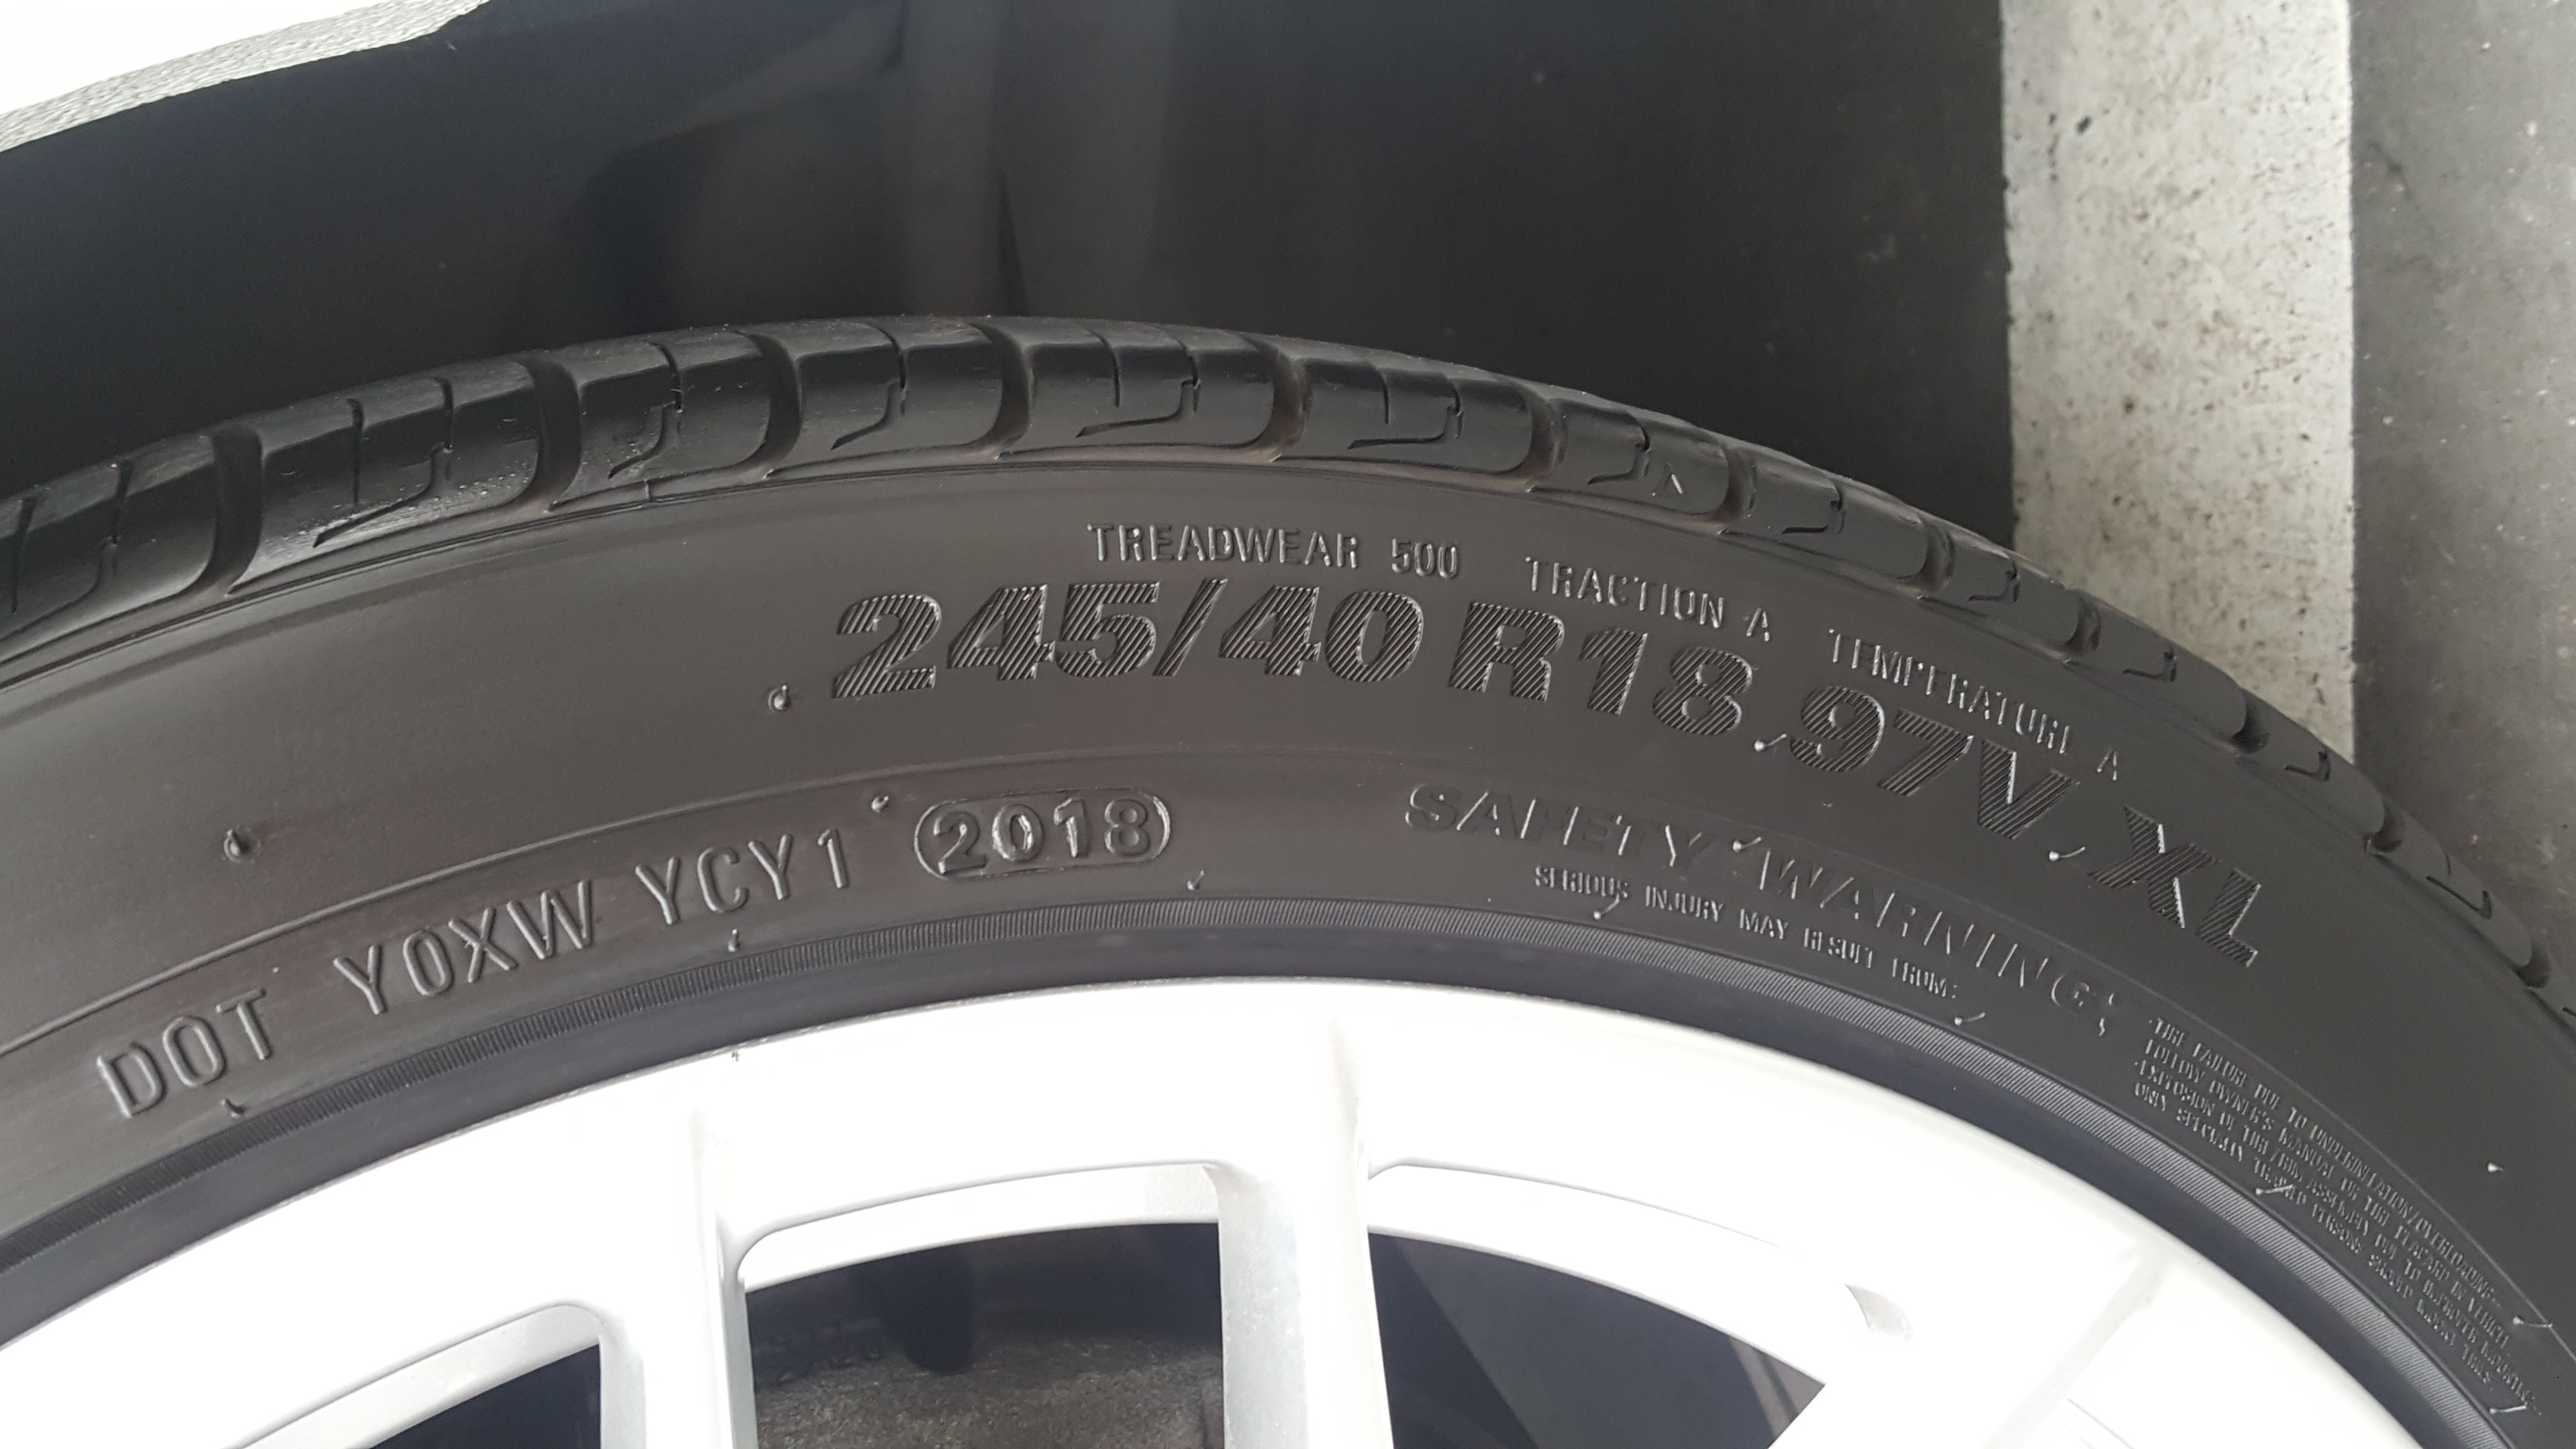 20190319_162418.jpg : 금호 TA31 타이어 4본 판매합니다.